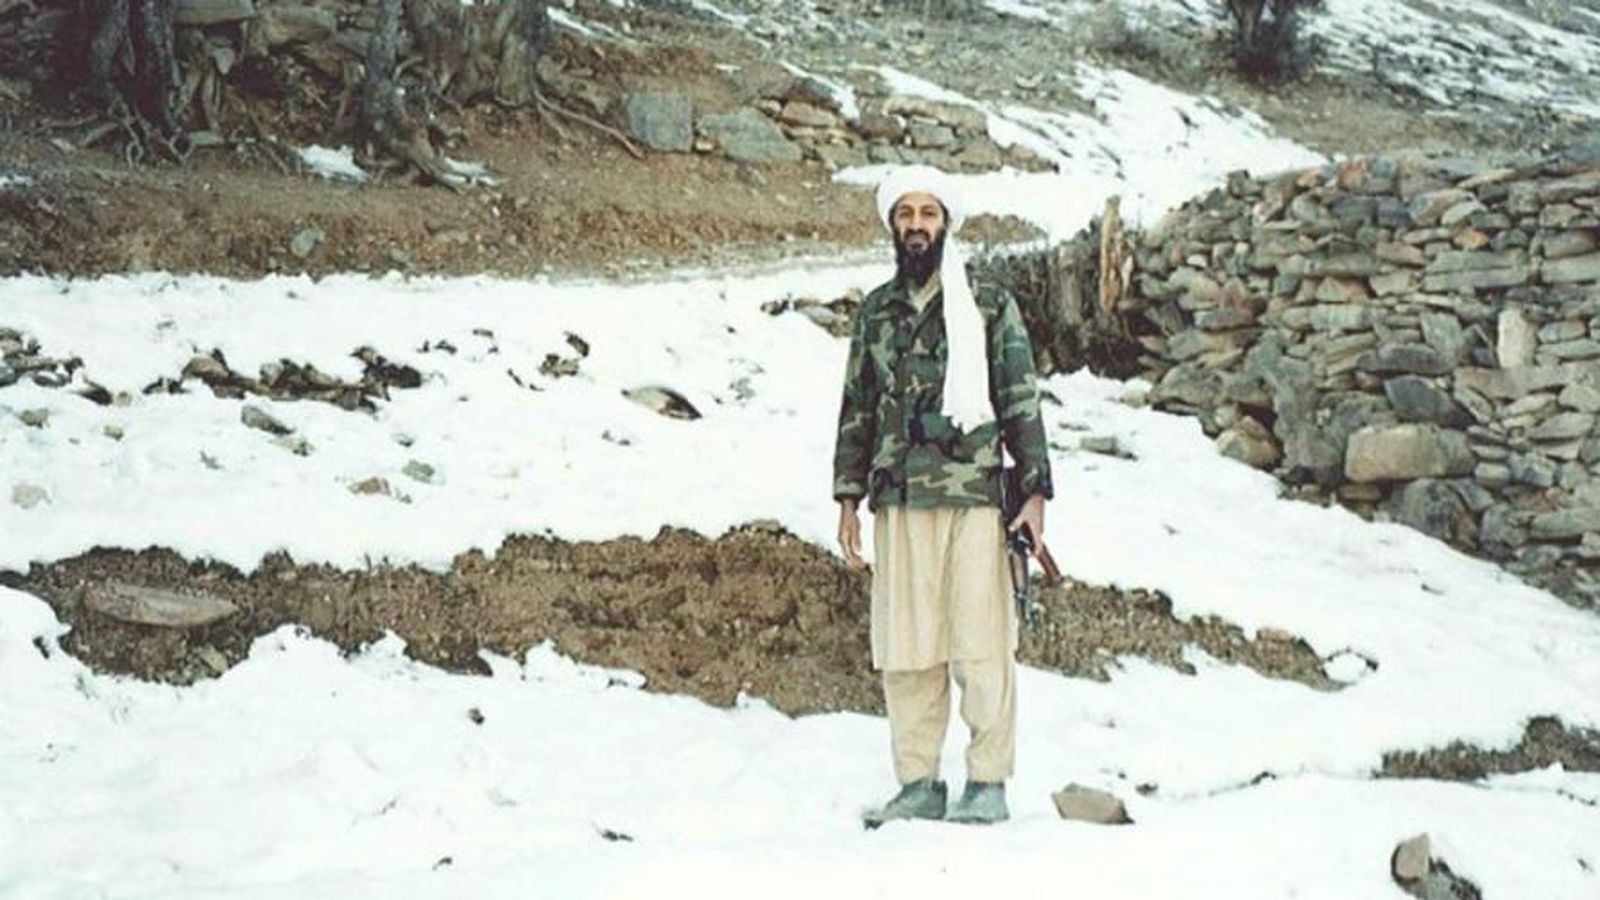 Foto: Osama bin Laden sostiene un kalashnikov en las montañas de Tora Bora, una región montañosa de Afganistán, en noviembre de 1996.